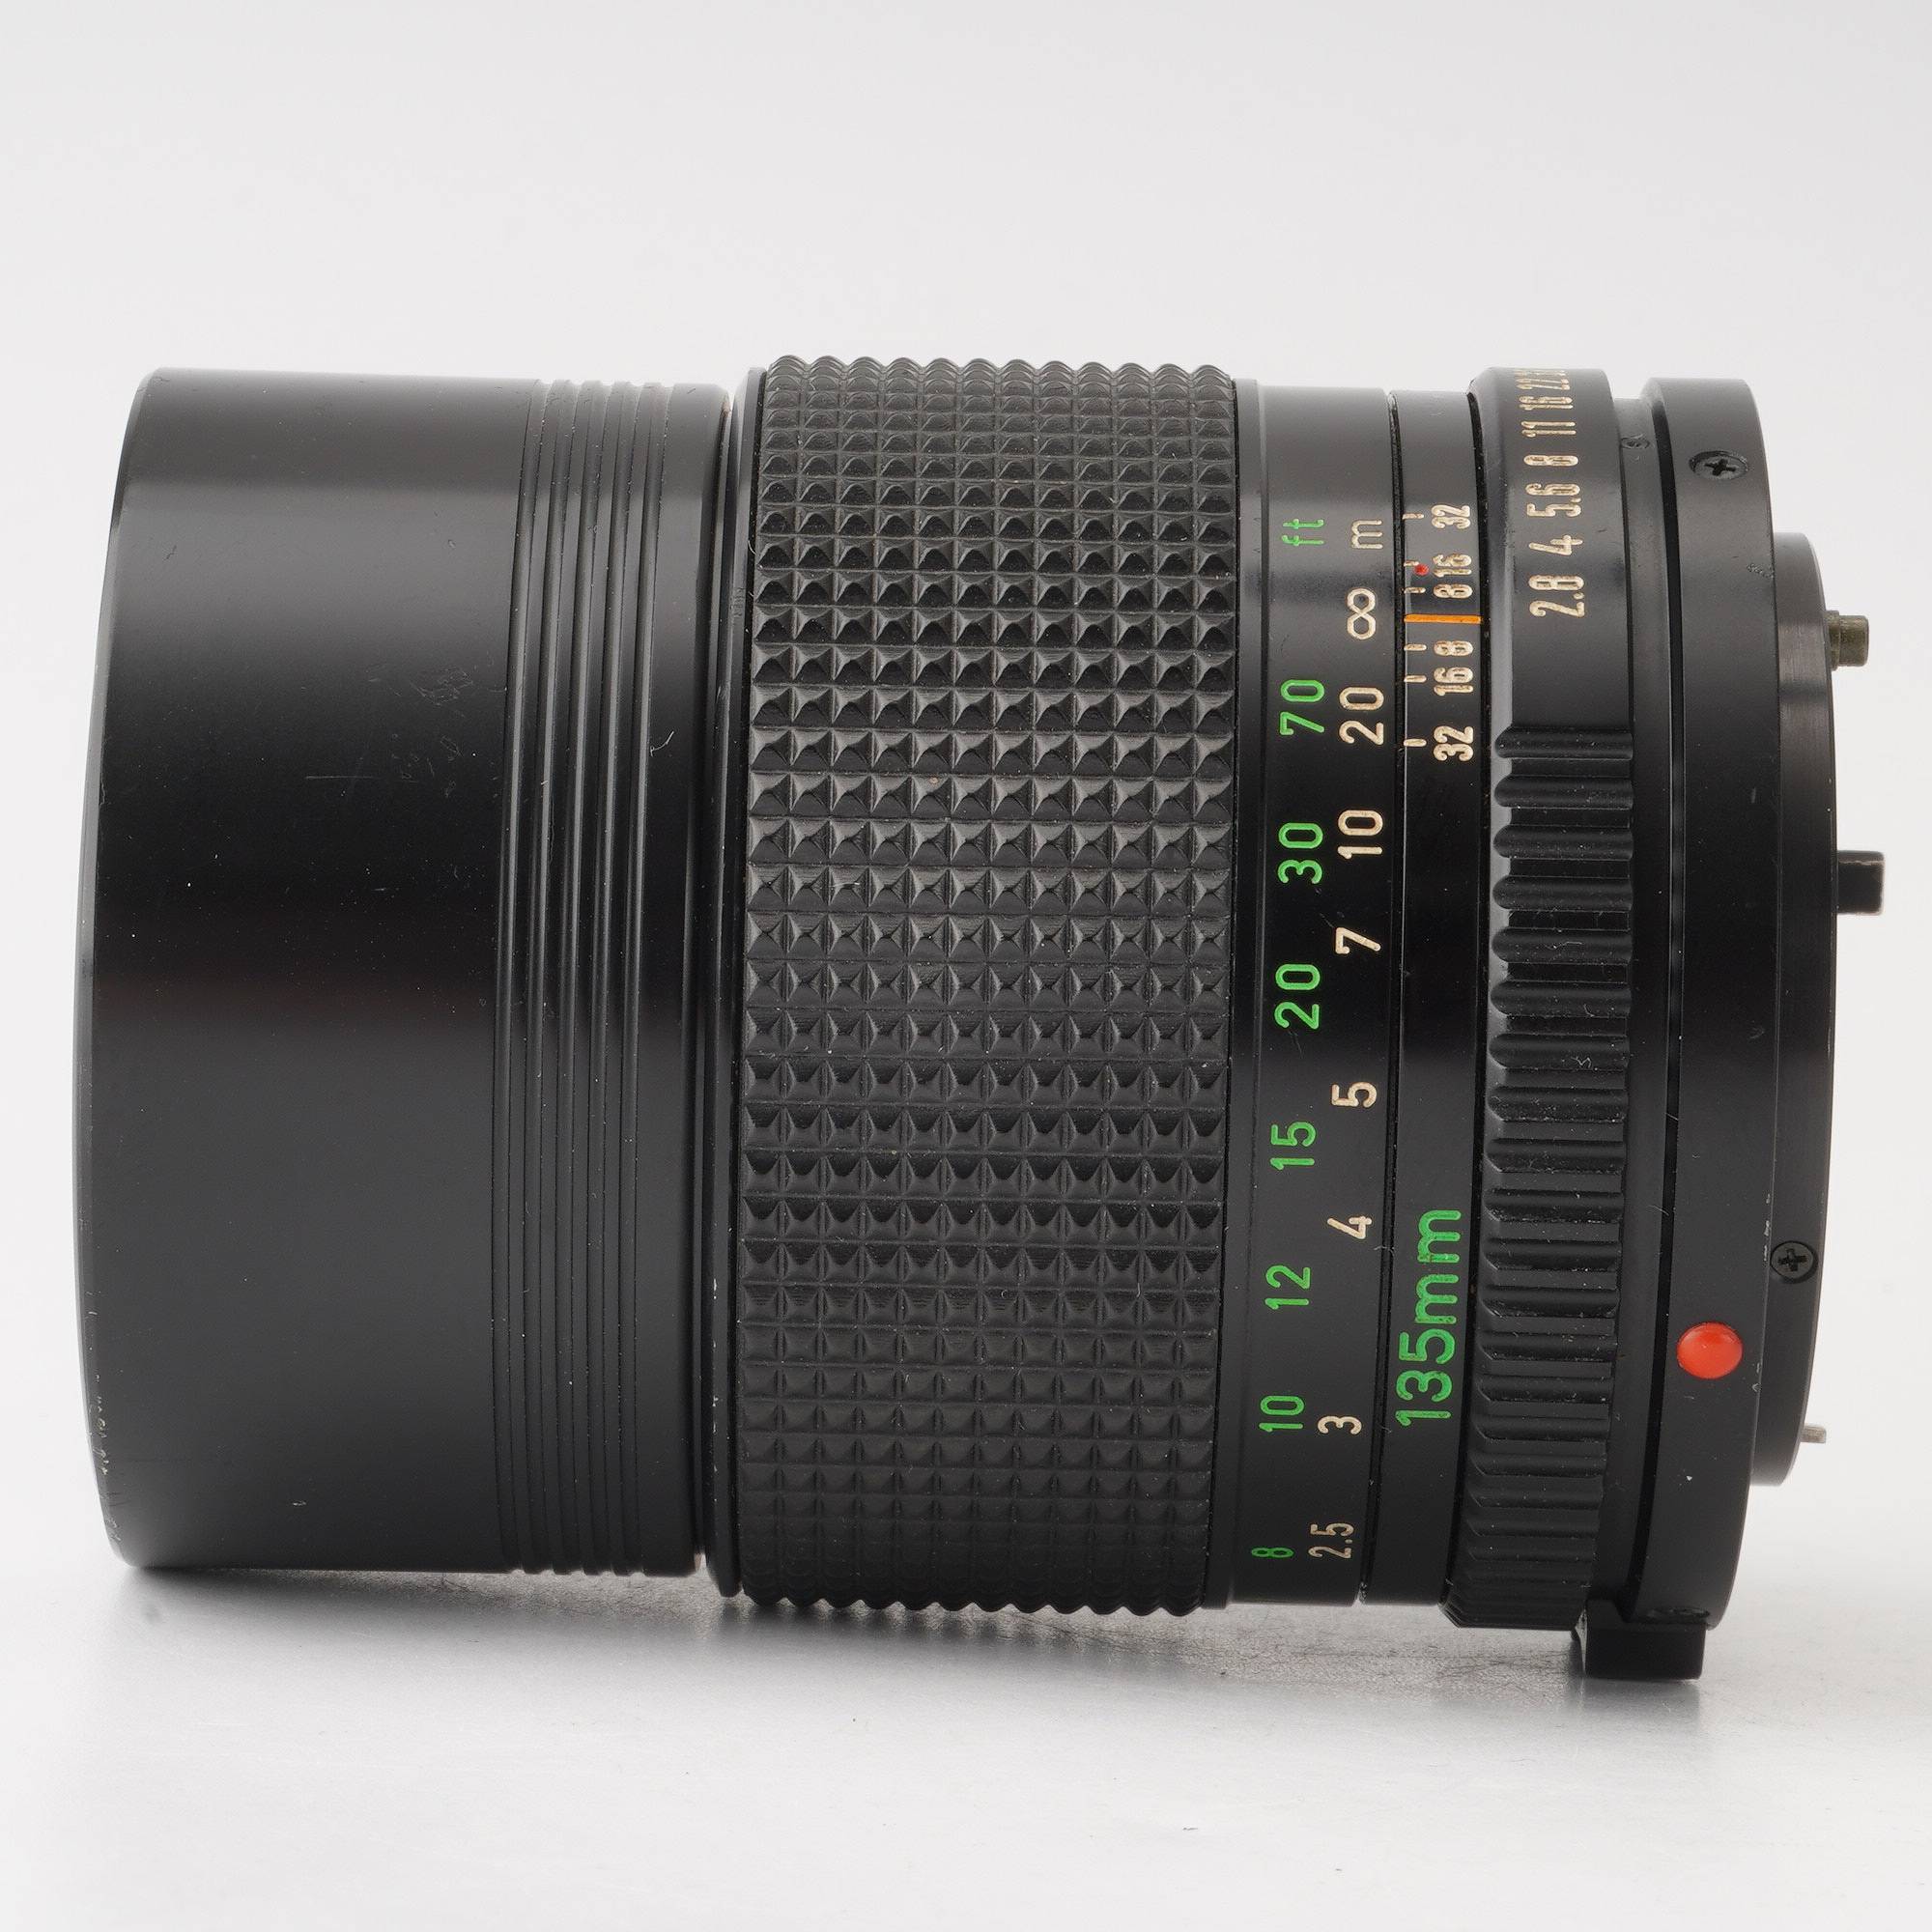 キヤノン Canon New FD 135mm F2.8 – Natural Camera / ナチュラルカメラ